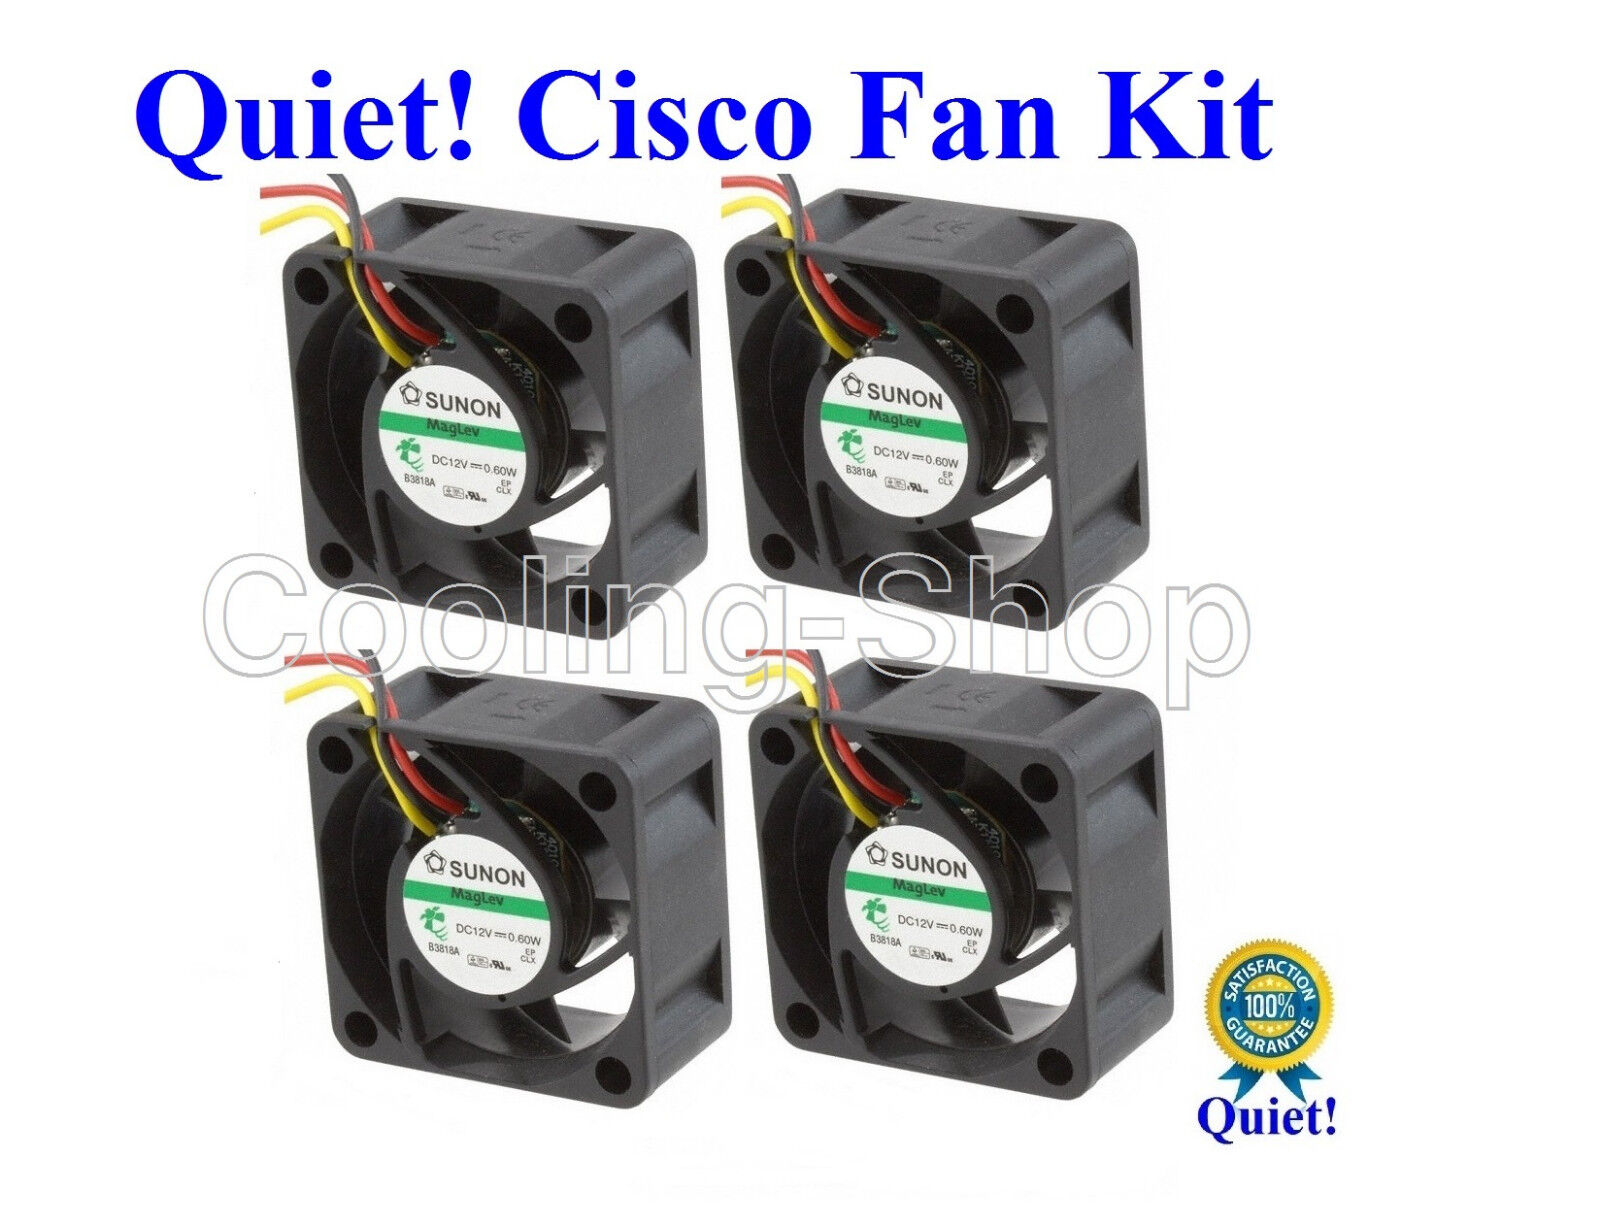 Cisco SG500-52MP Quiet Cisco Replacement Fan Kit  (4x new fans) Low Noise